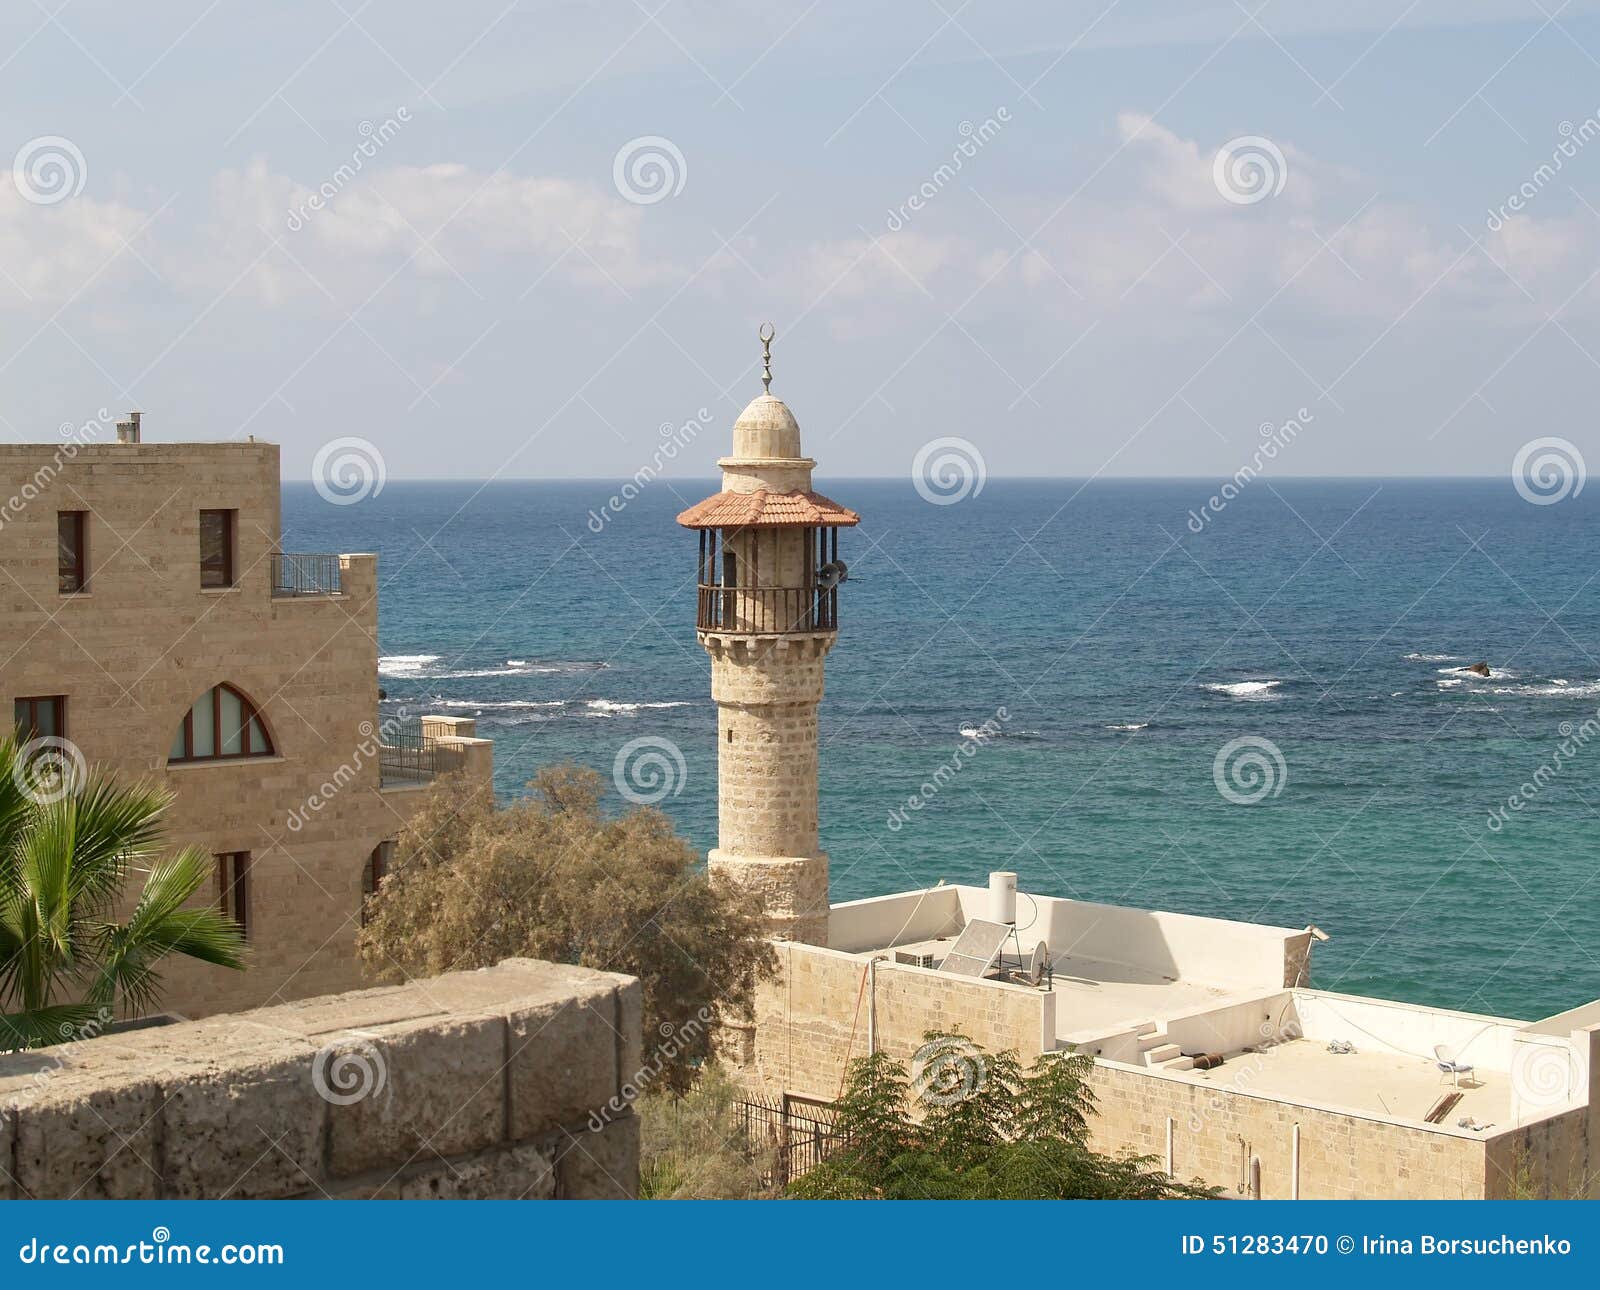 israel. mosque dzhama el-bajar (al-bakhr, the sea mosque) in yaffo